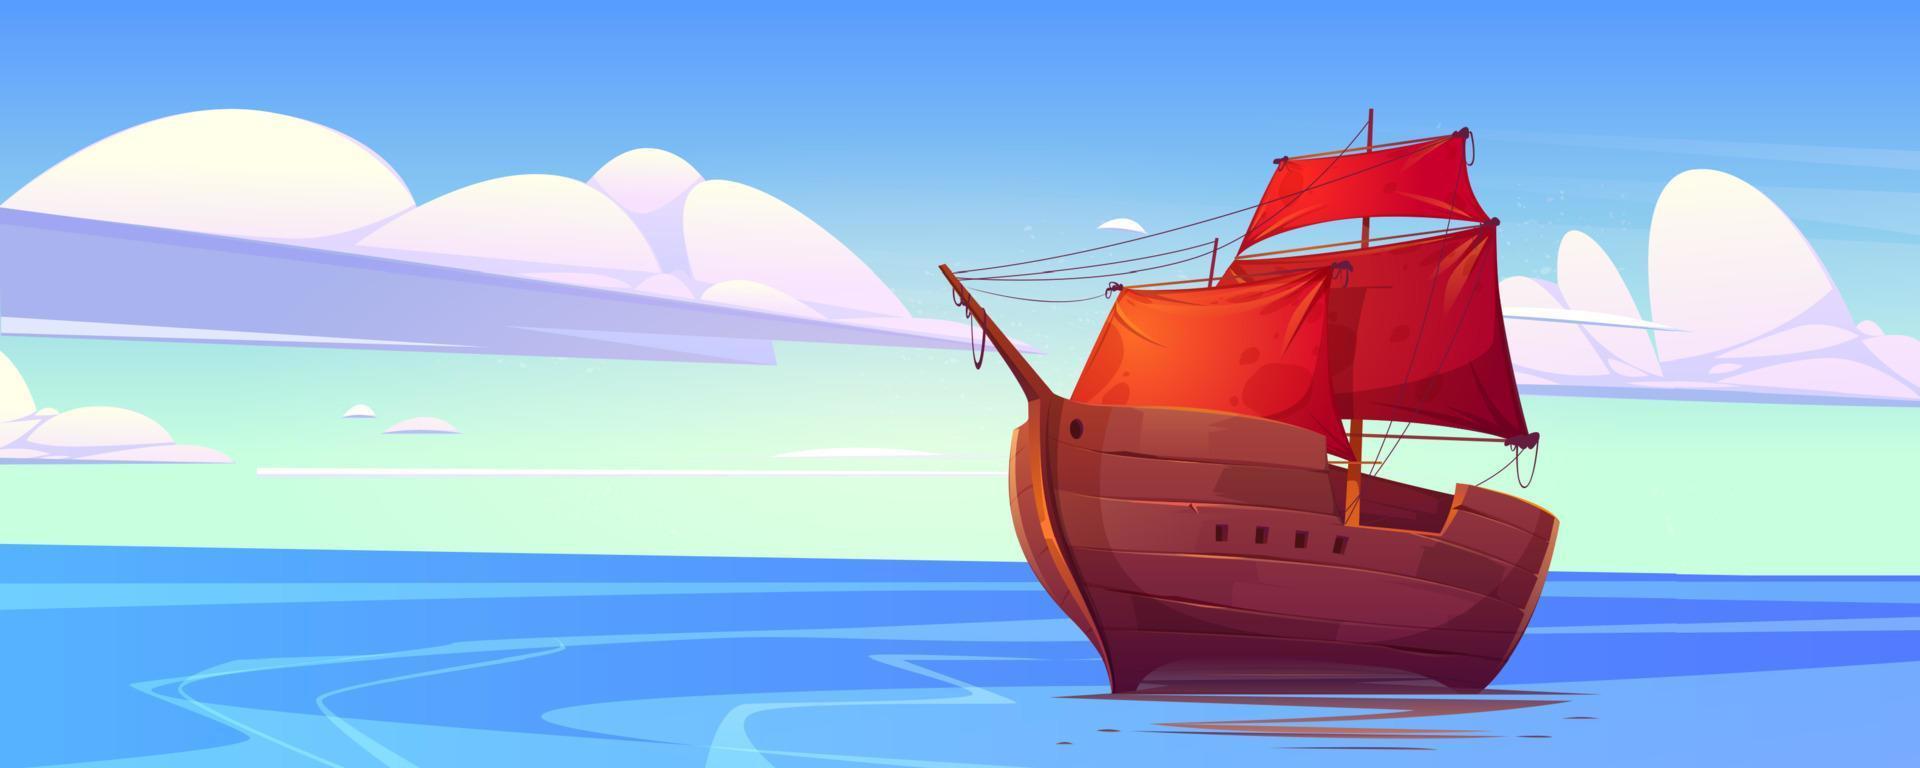 altes Holzschiff mit roten Segeln im Meer vektor